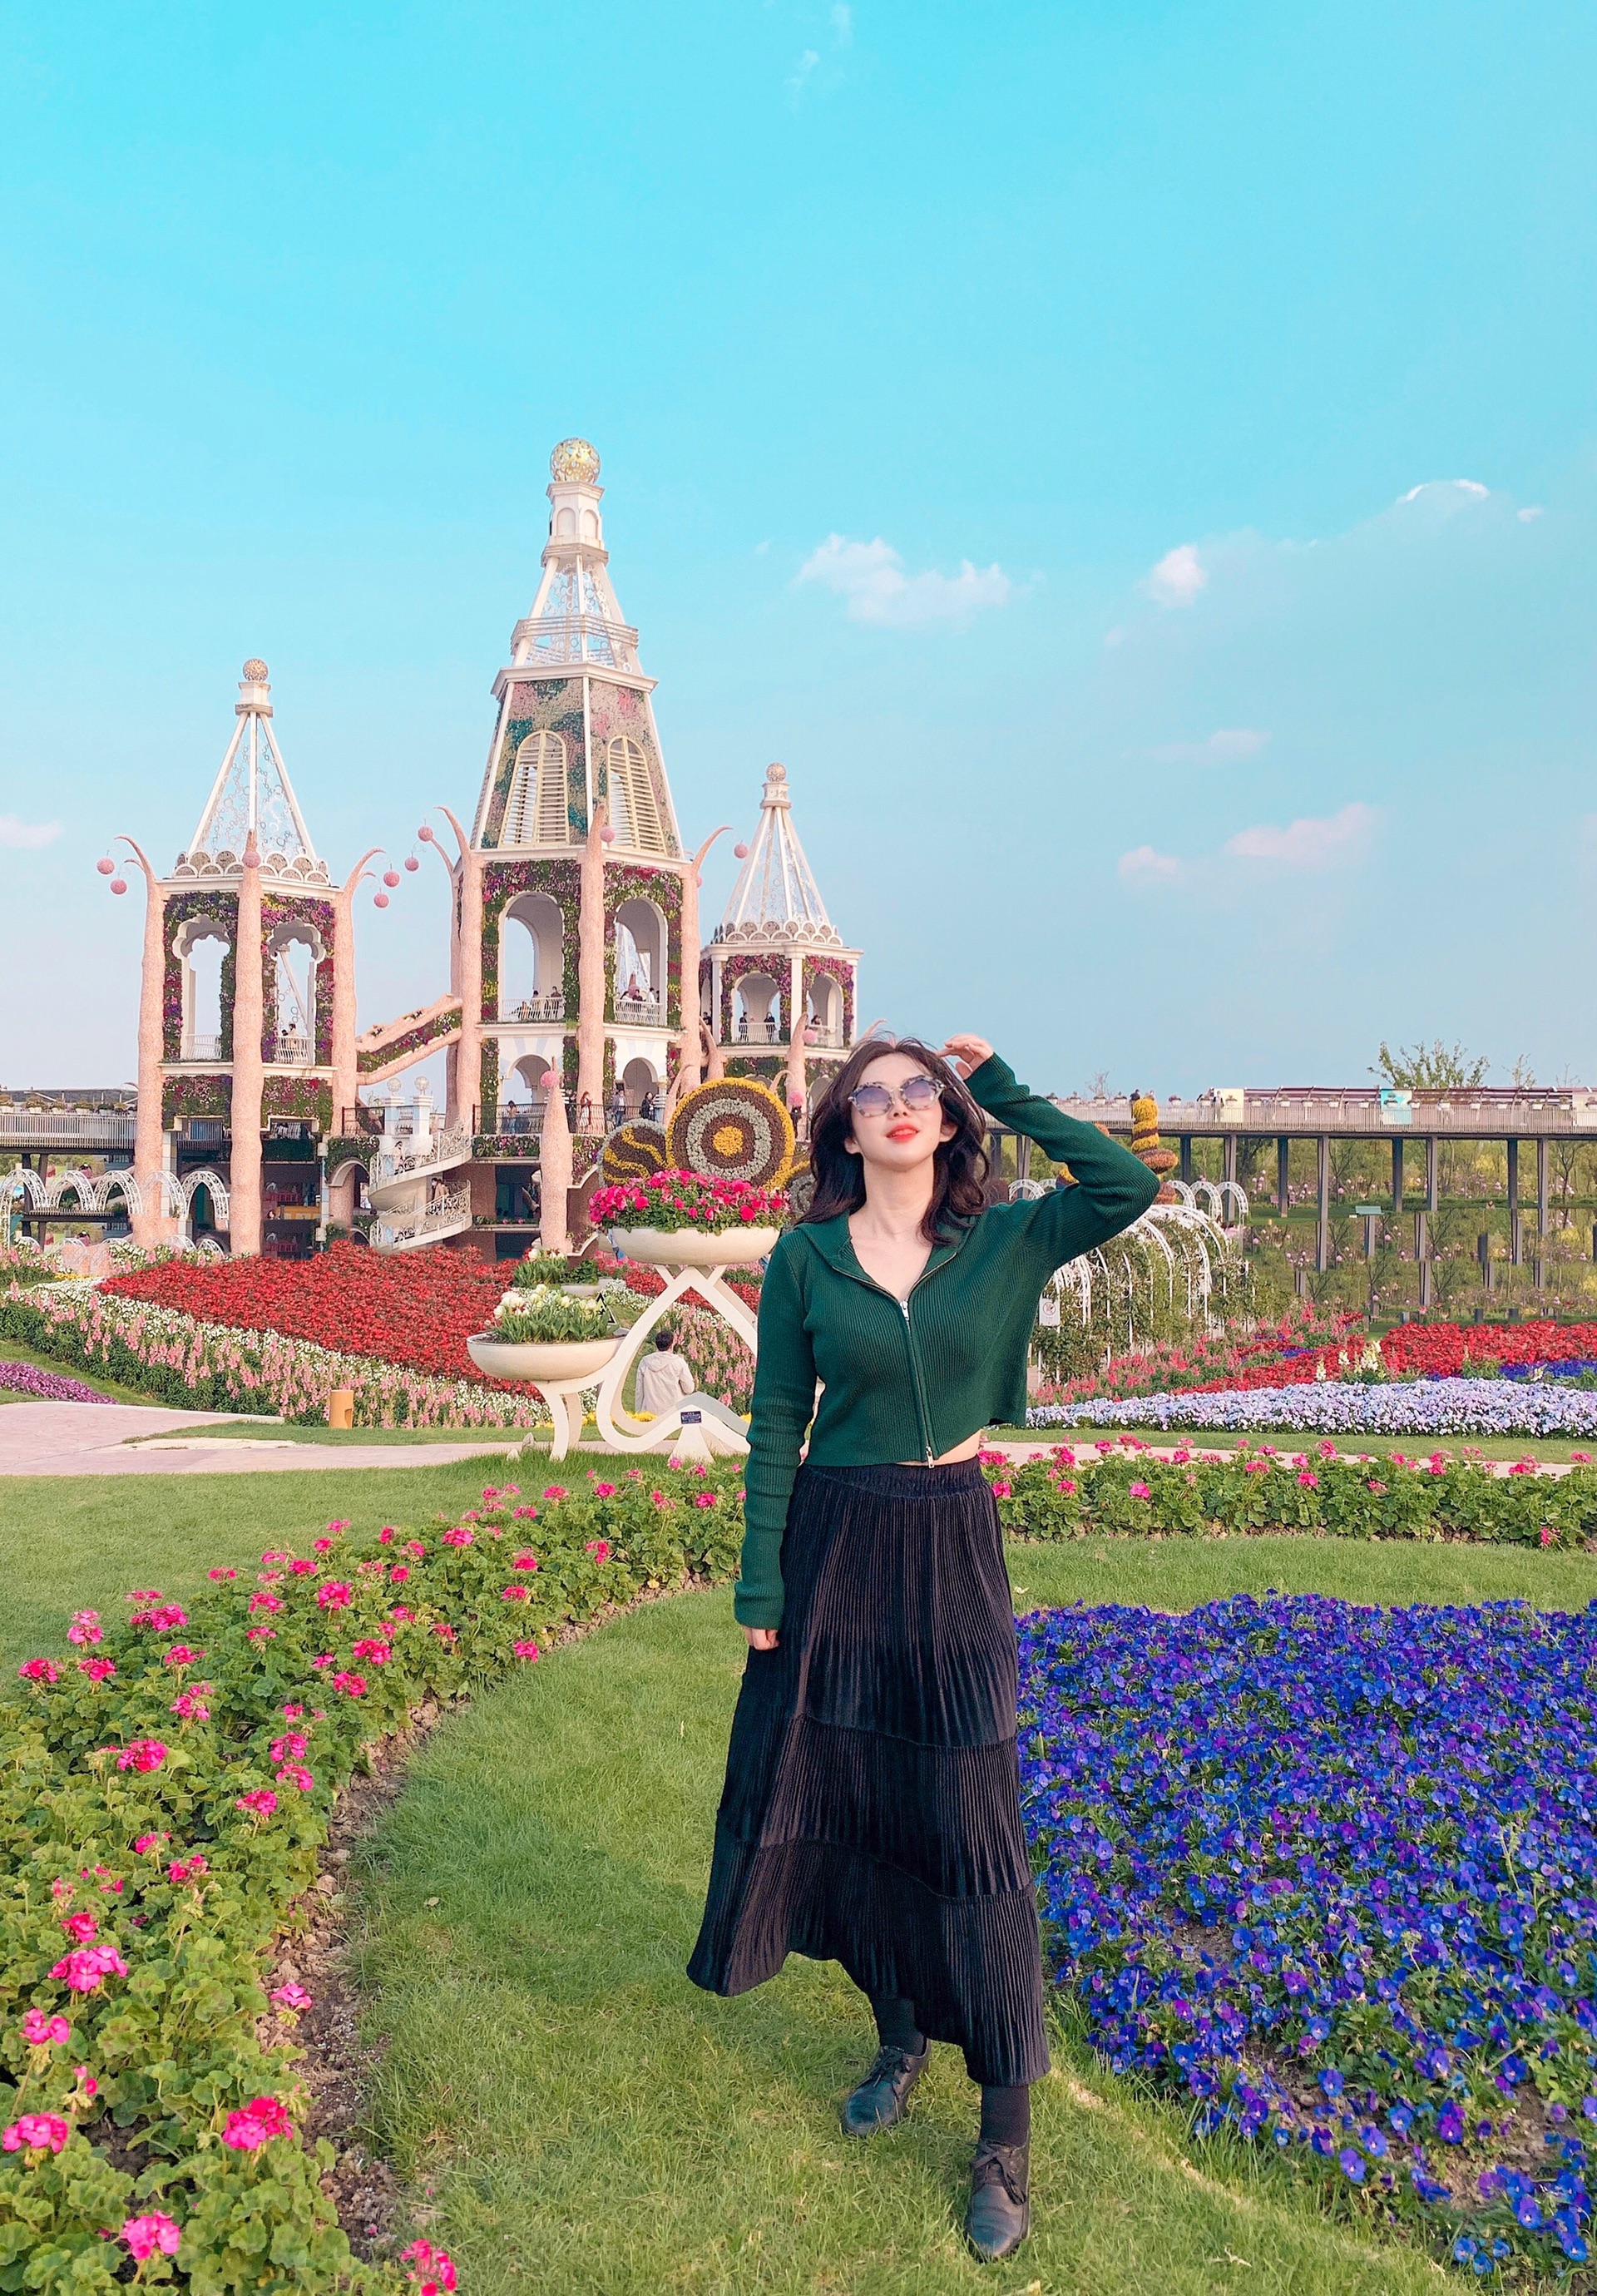 来当魔仙堡公主上海周末春游好去处-上海浦江郊野奇迹花园